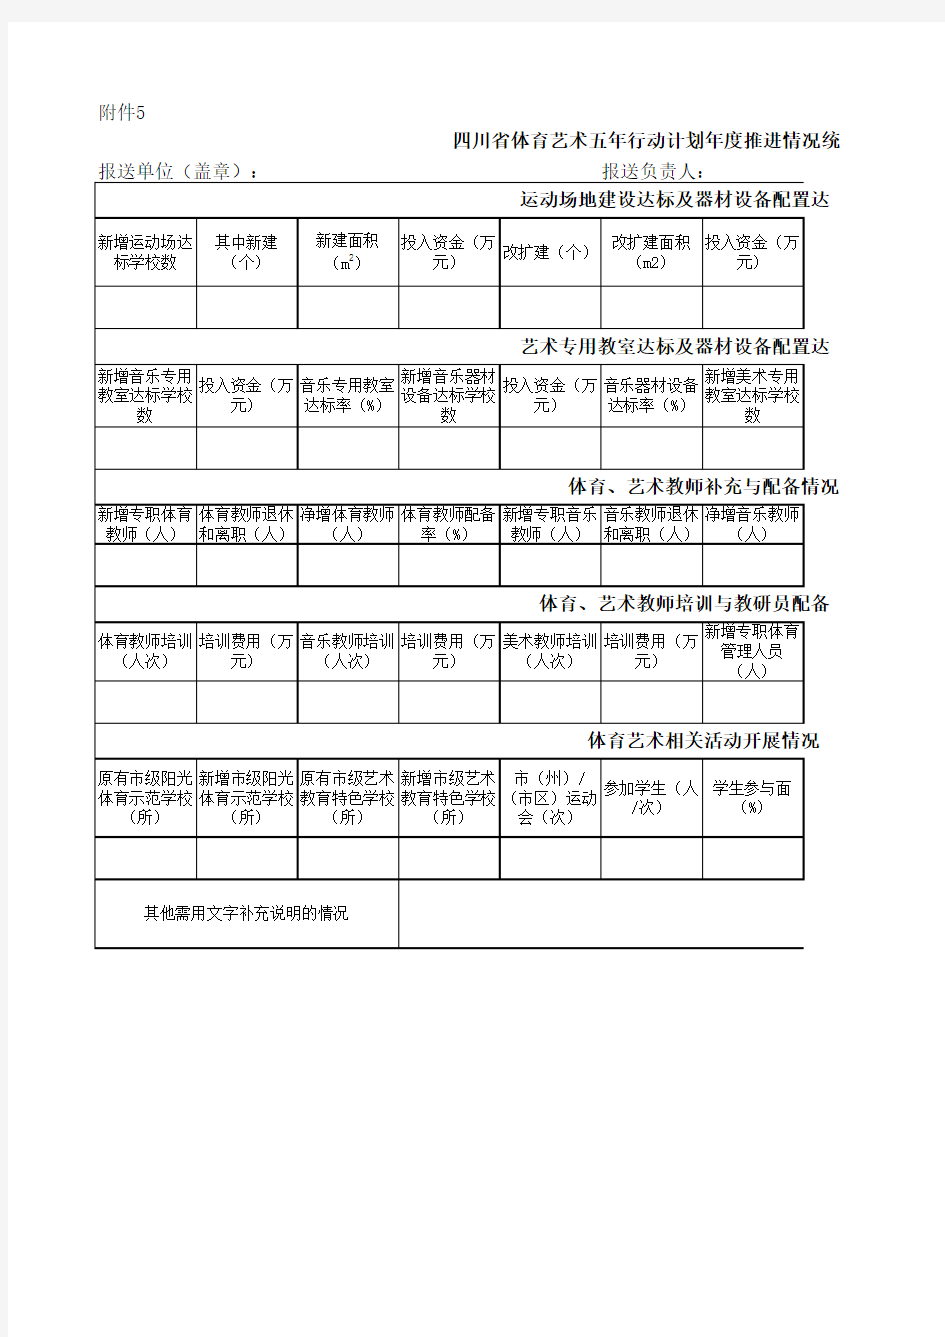 四川省体育艺术五年行动计划年度推进情况统计表(2015) Microsoft Excel 工作表